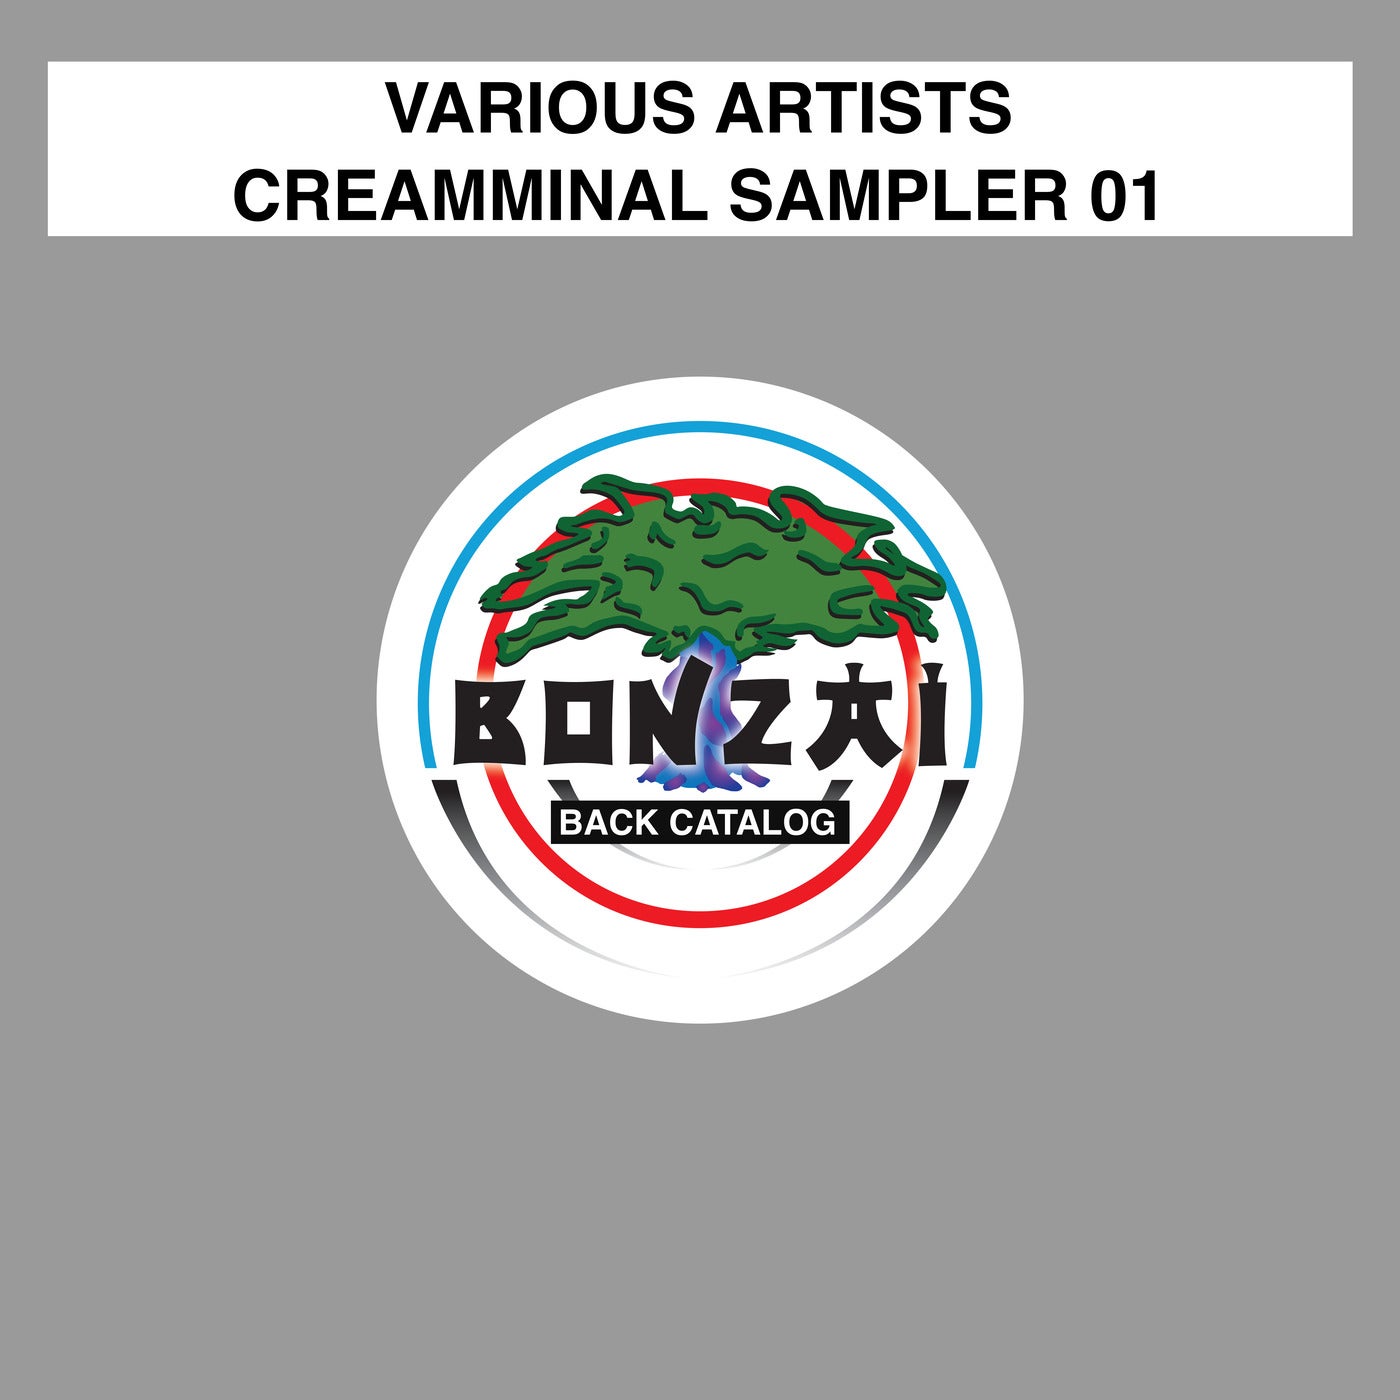 Creamminal Sampler 01